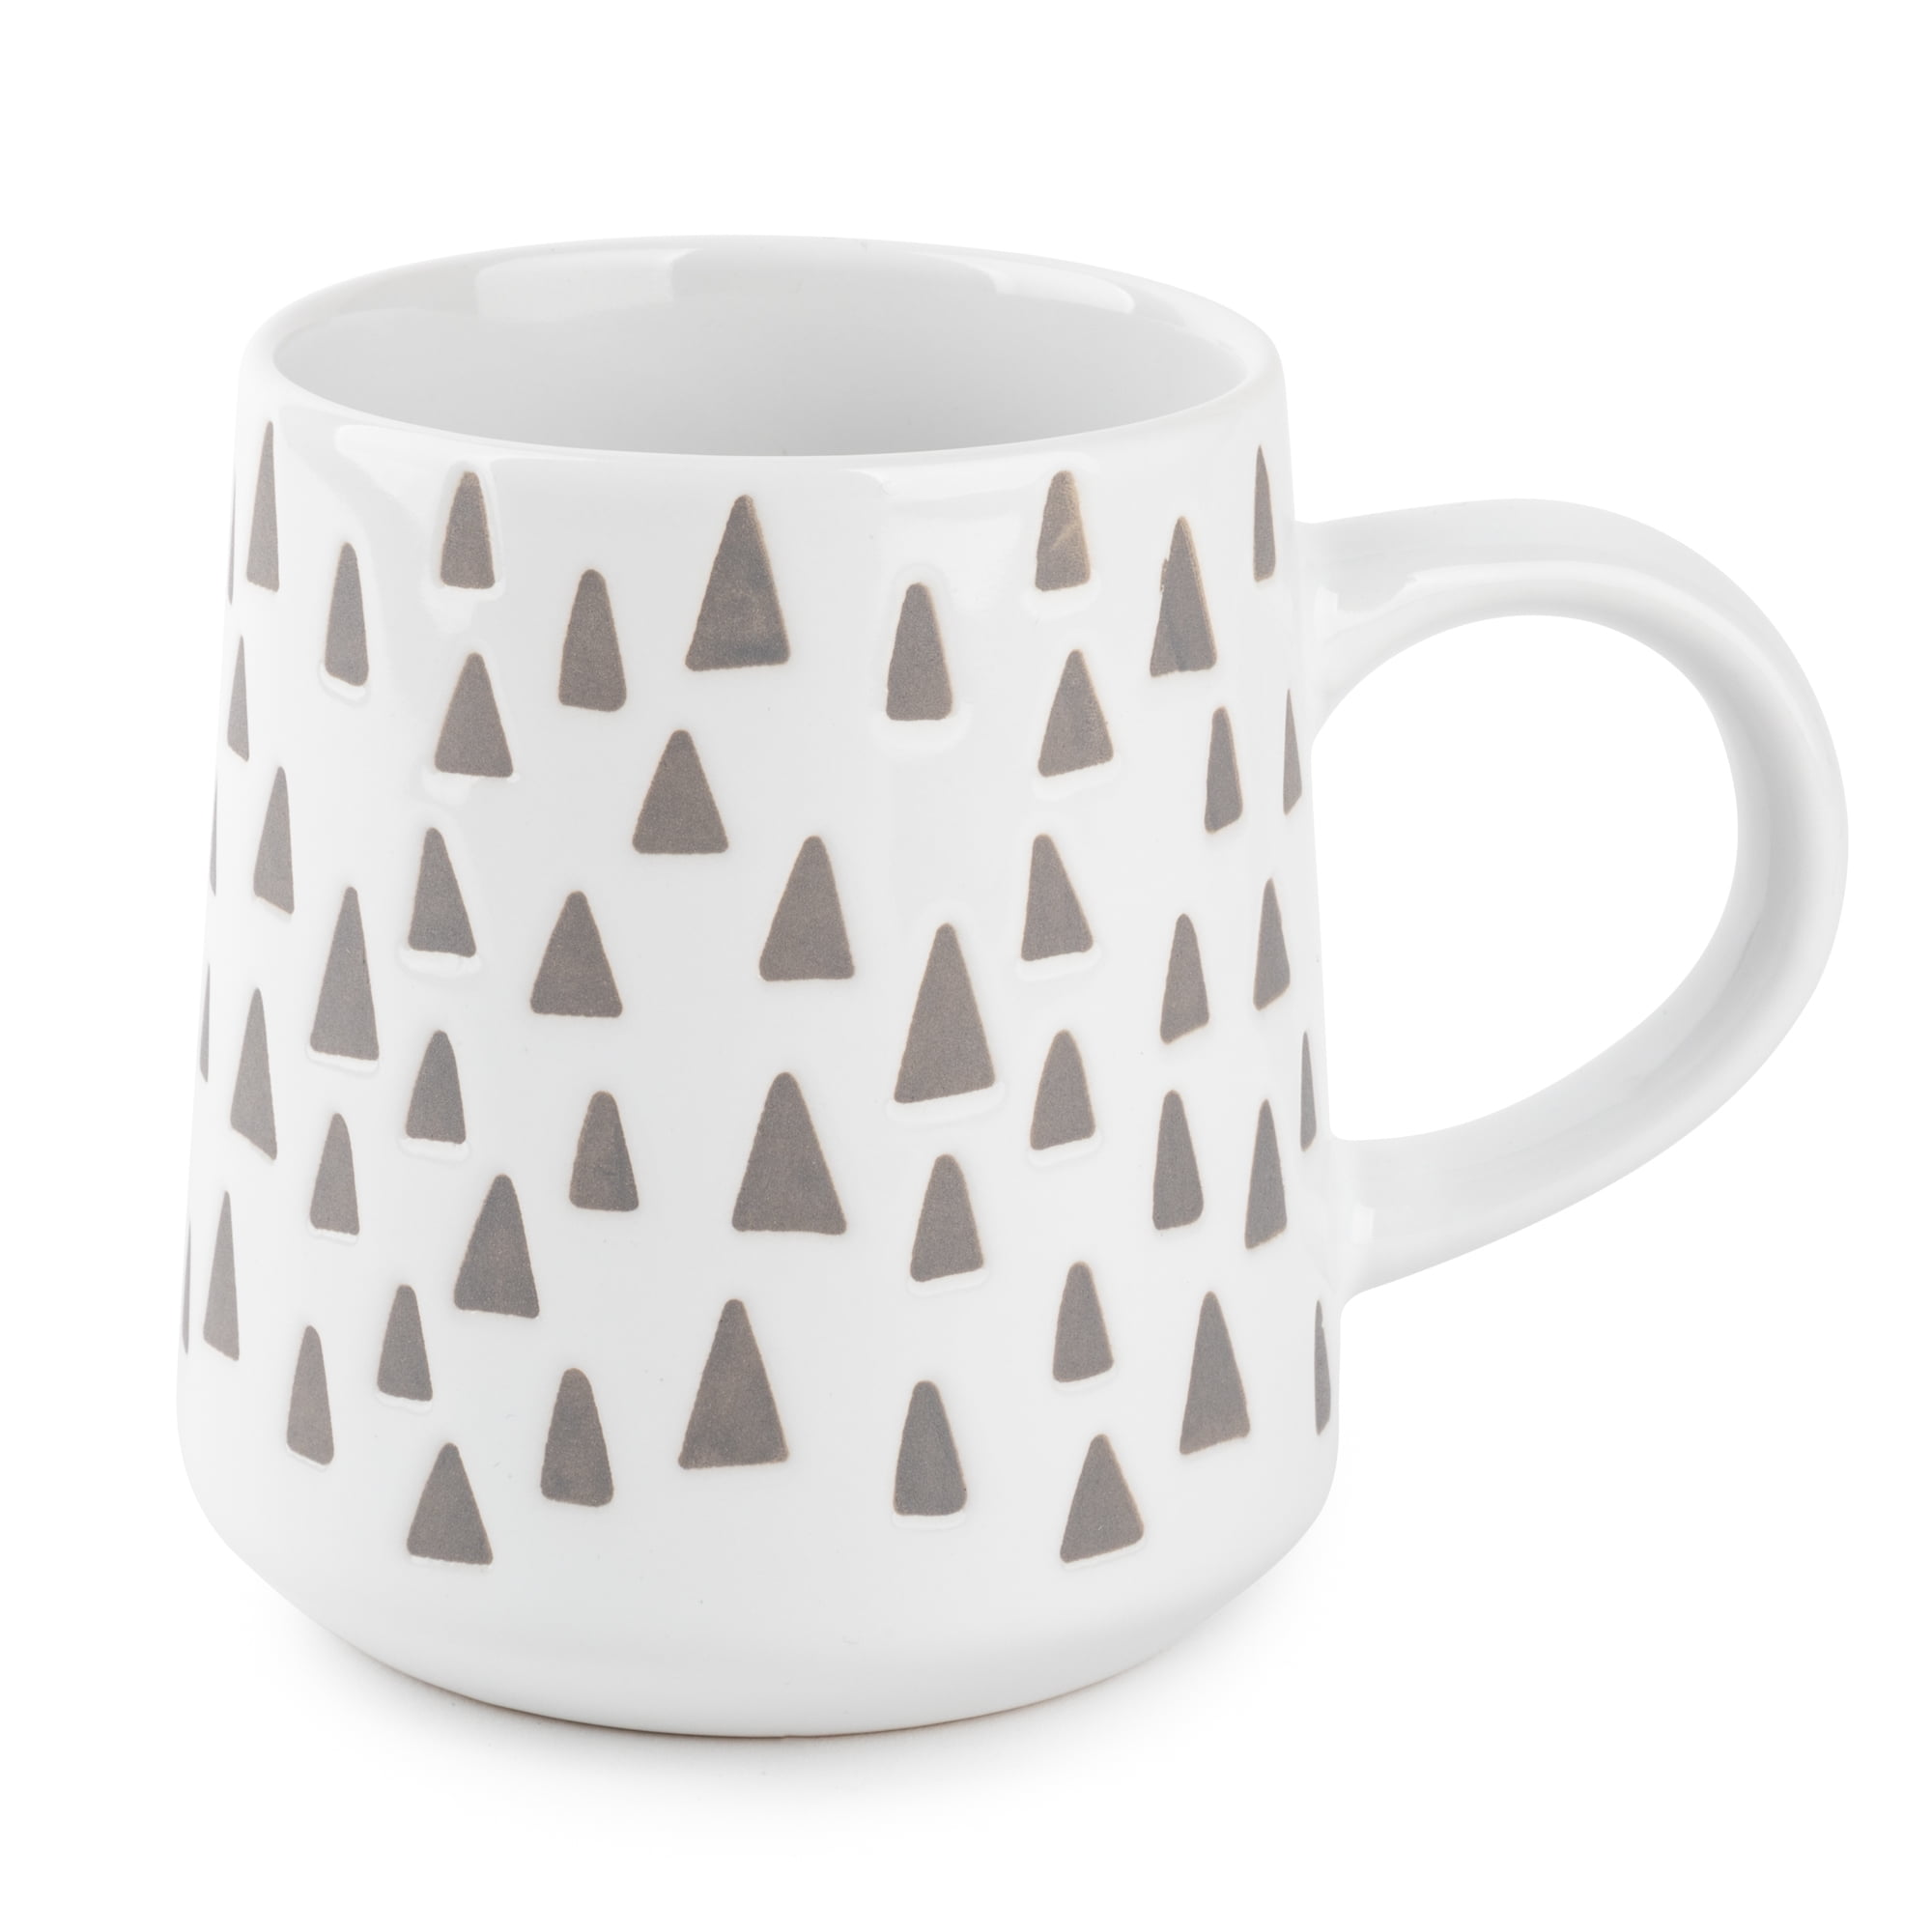 Thyme & Table Stoneware Mug, 16 fl oz, White Triangles